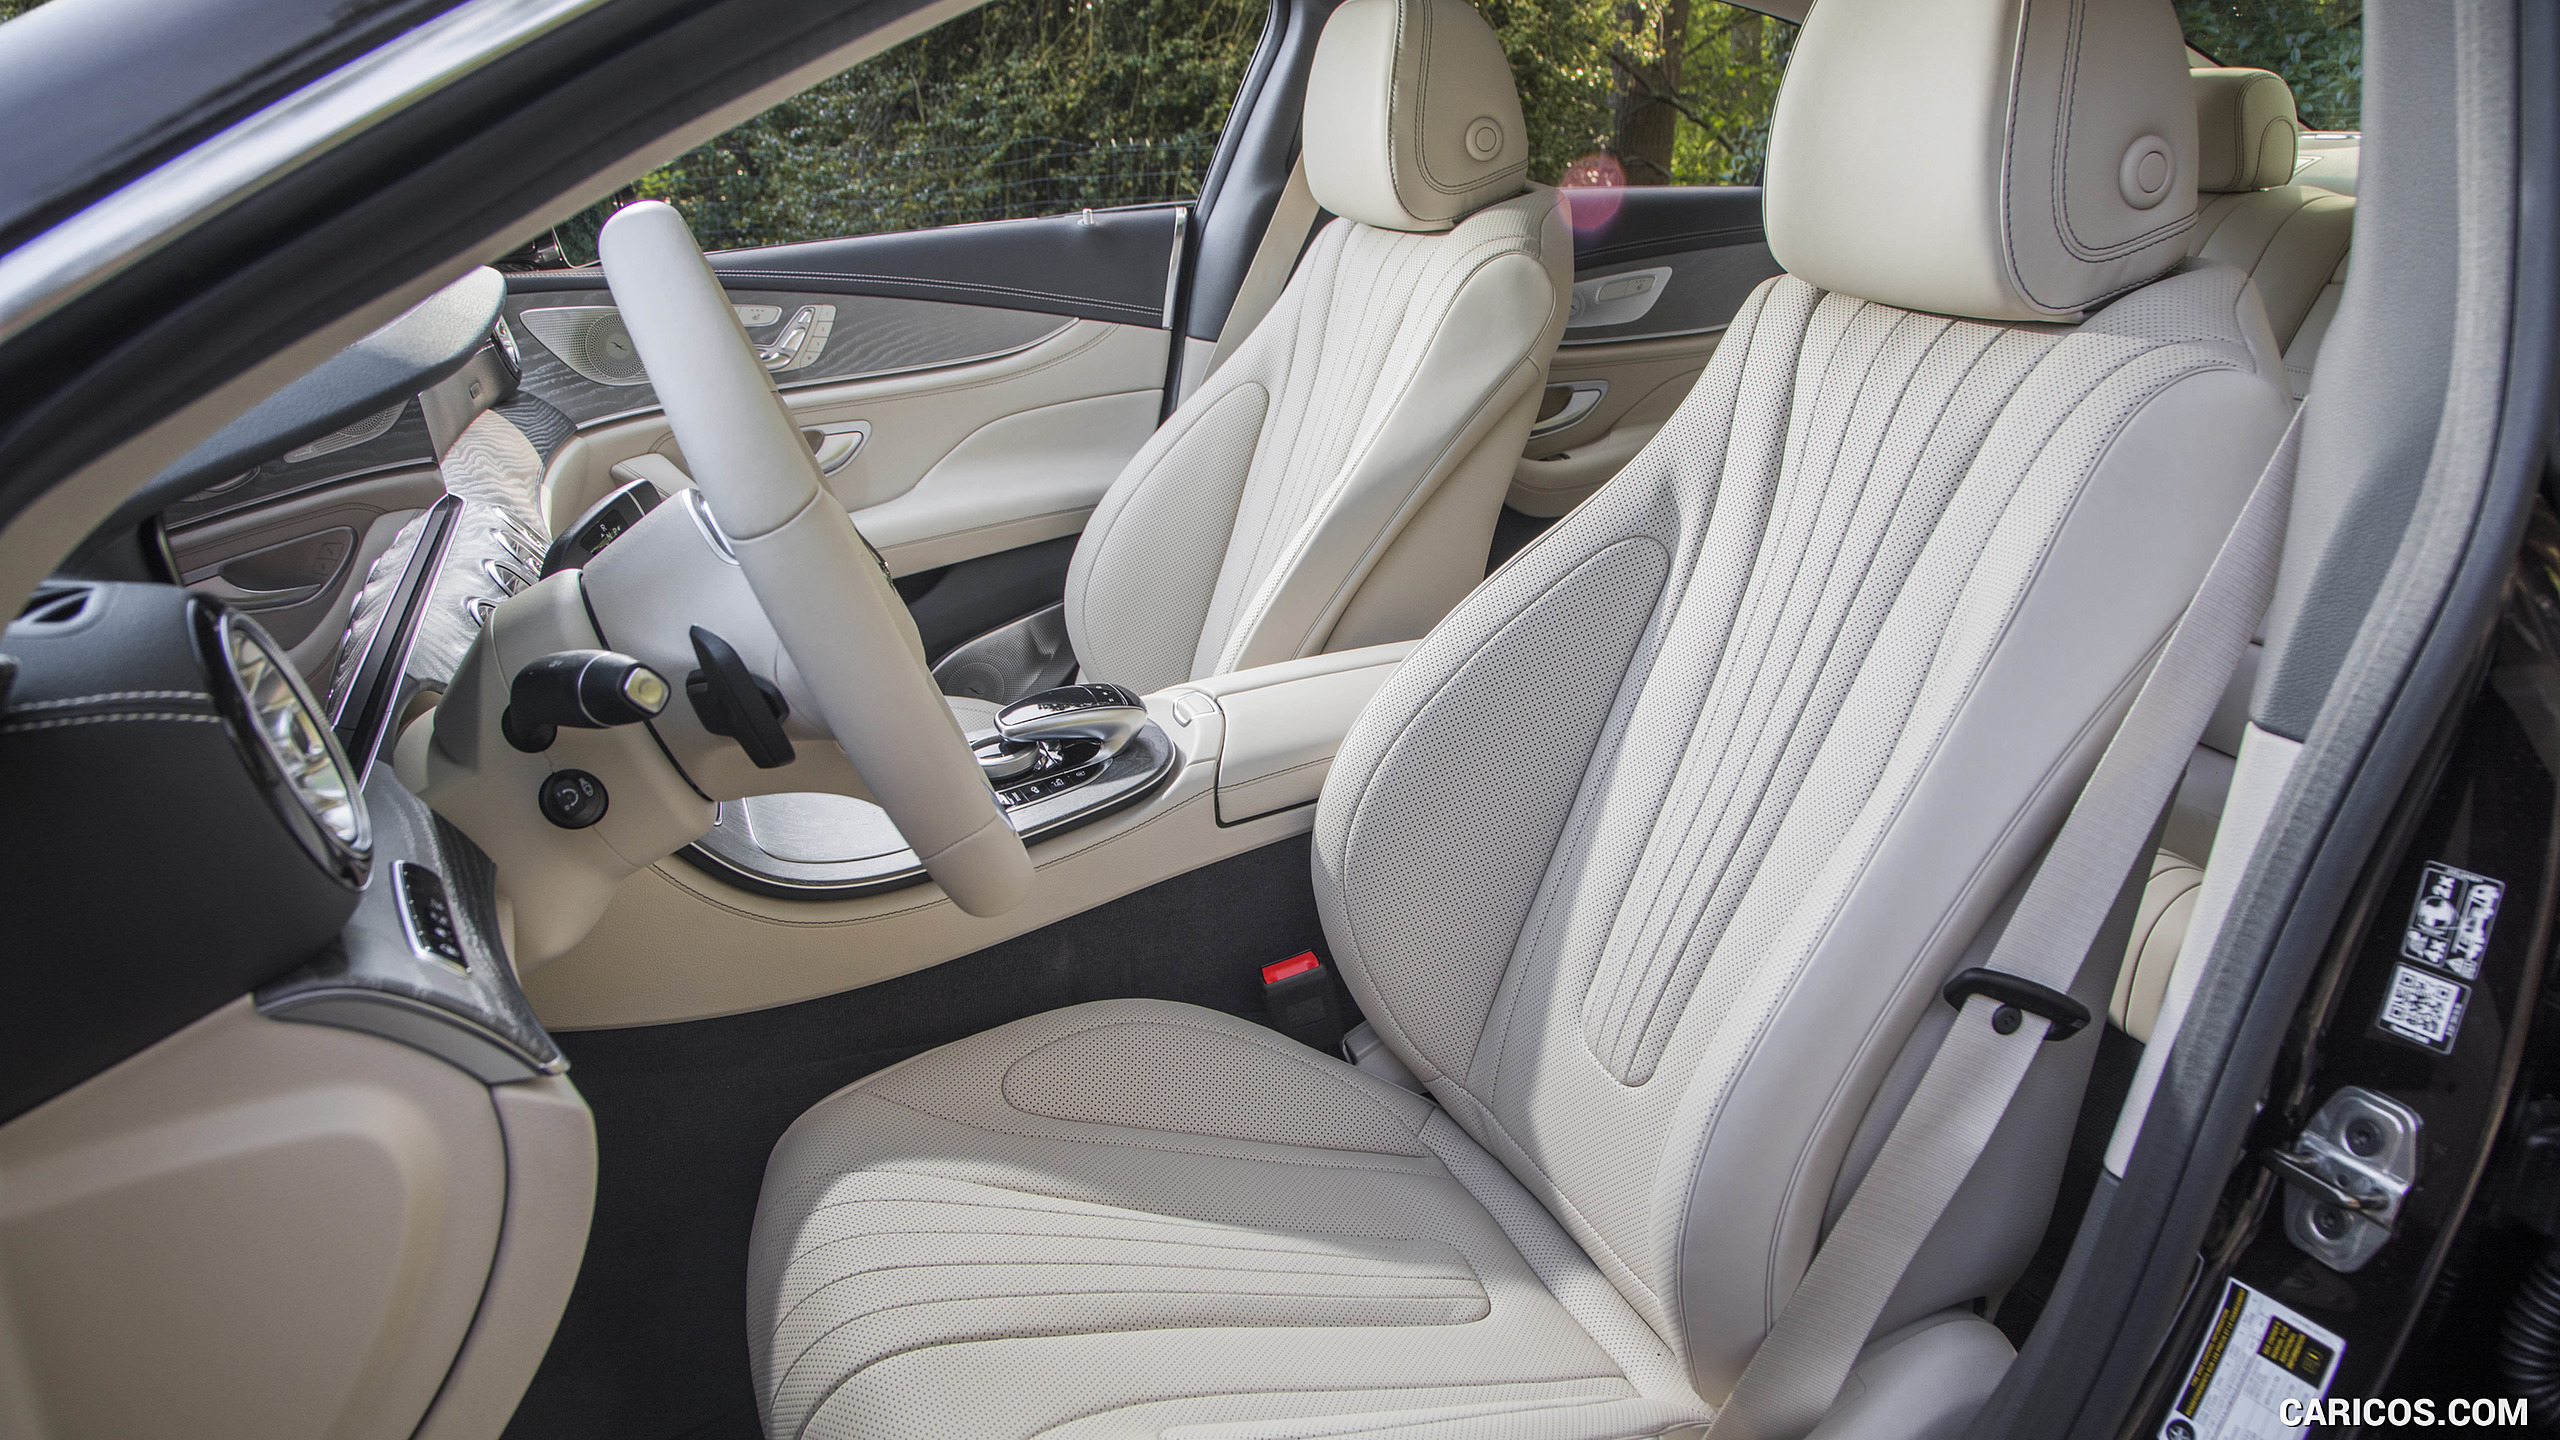 2019 Mercedes-Benz CLS 450 4MATIC (US-Spec) - Interior, Front Seats, #177 of 231